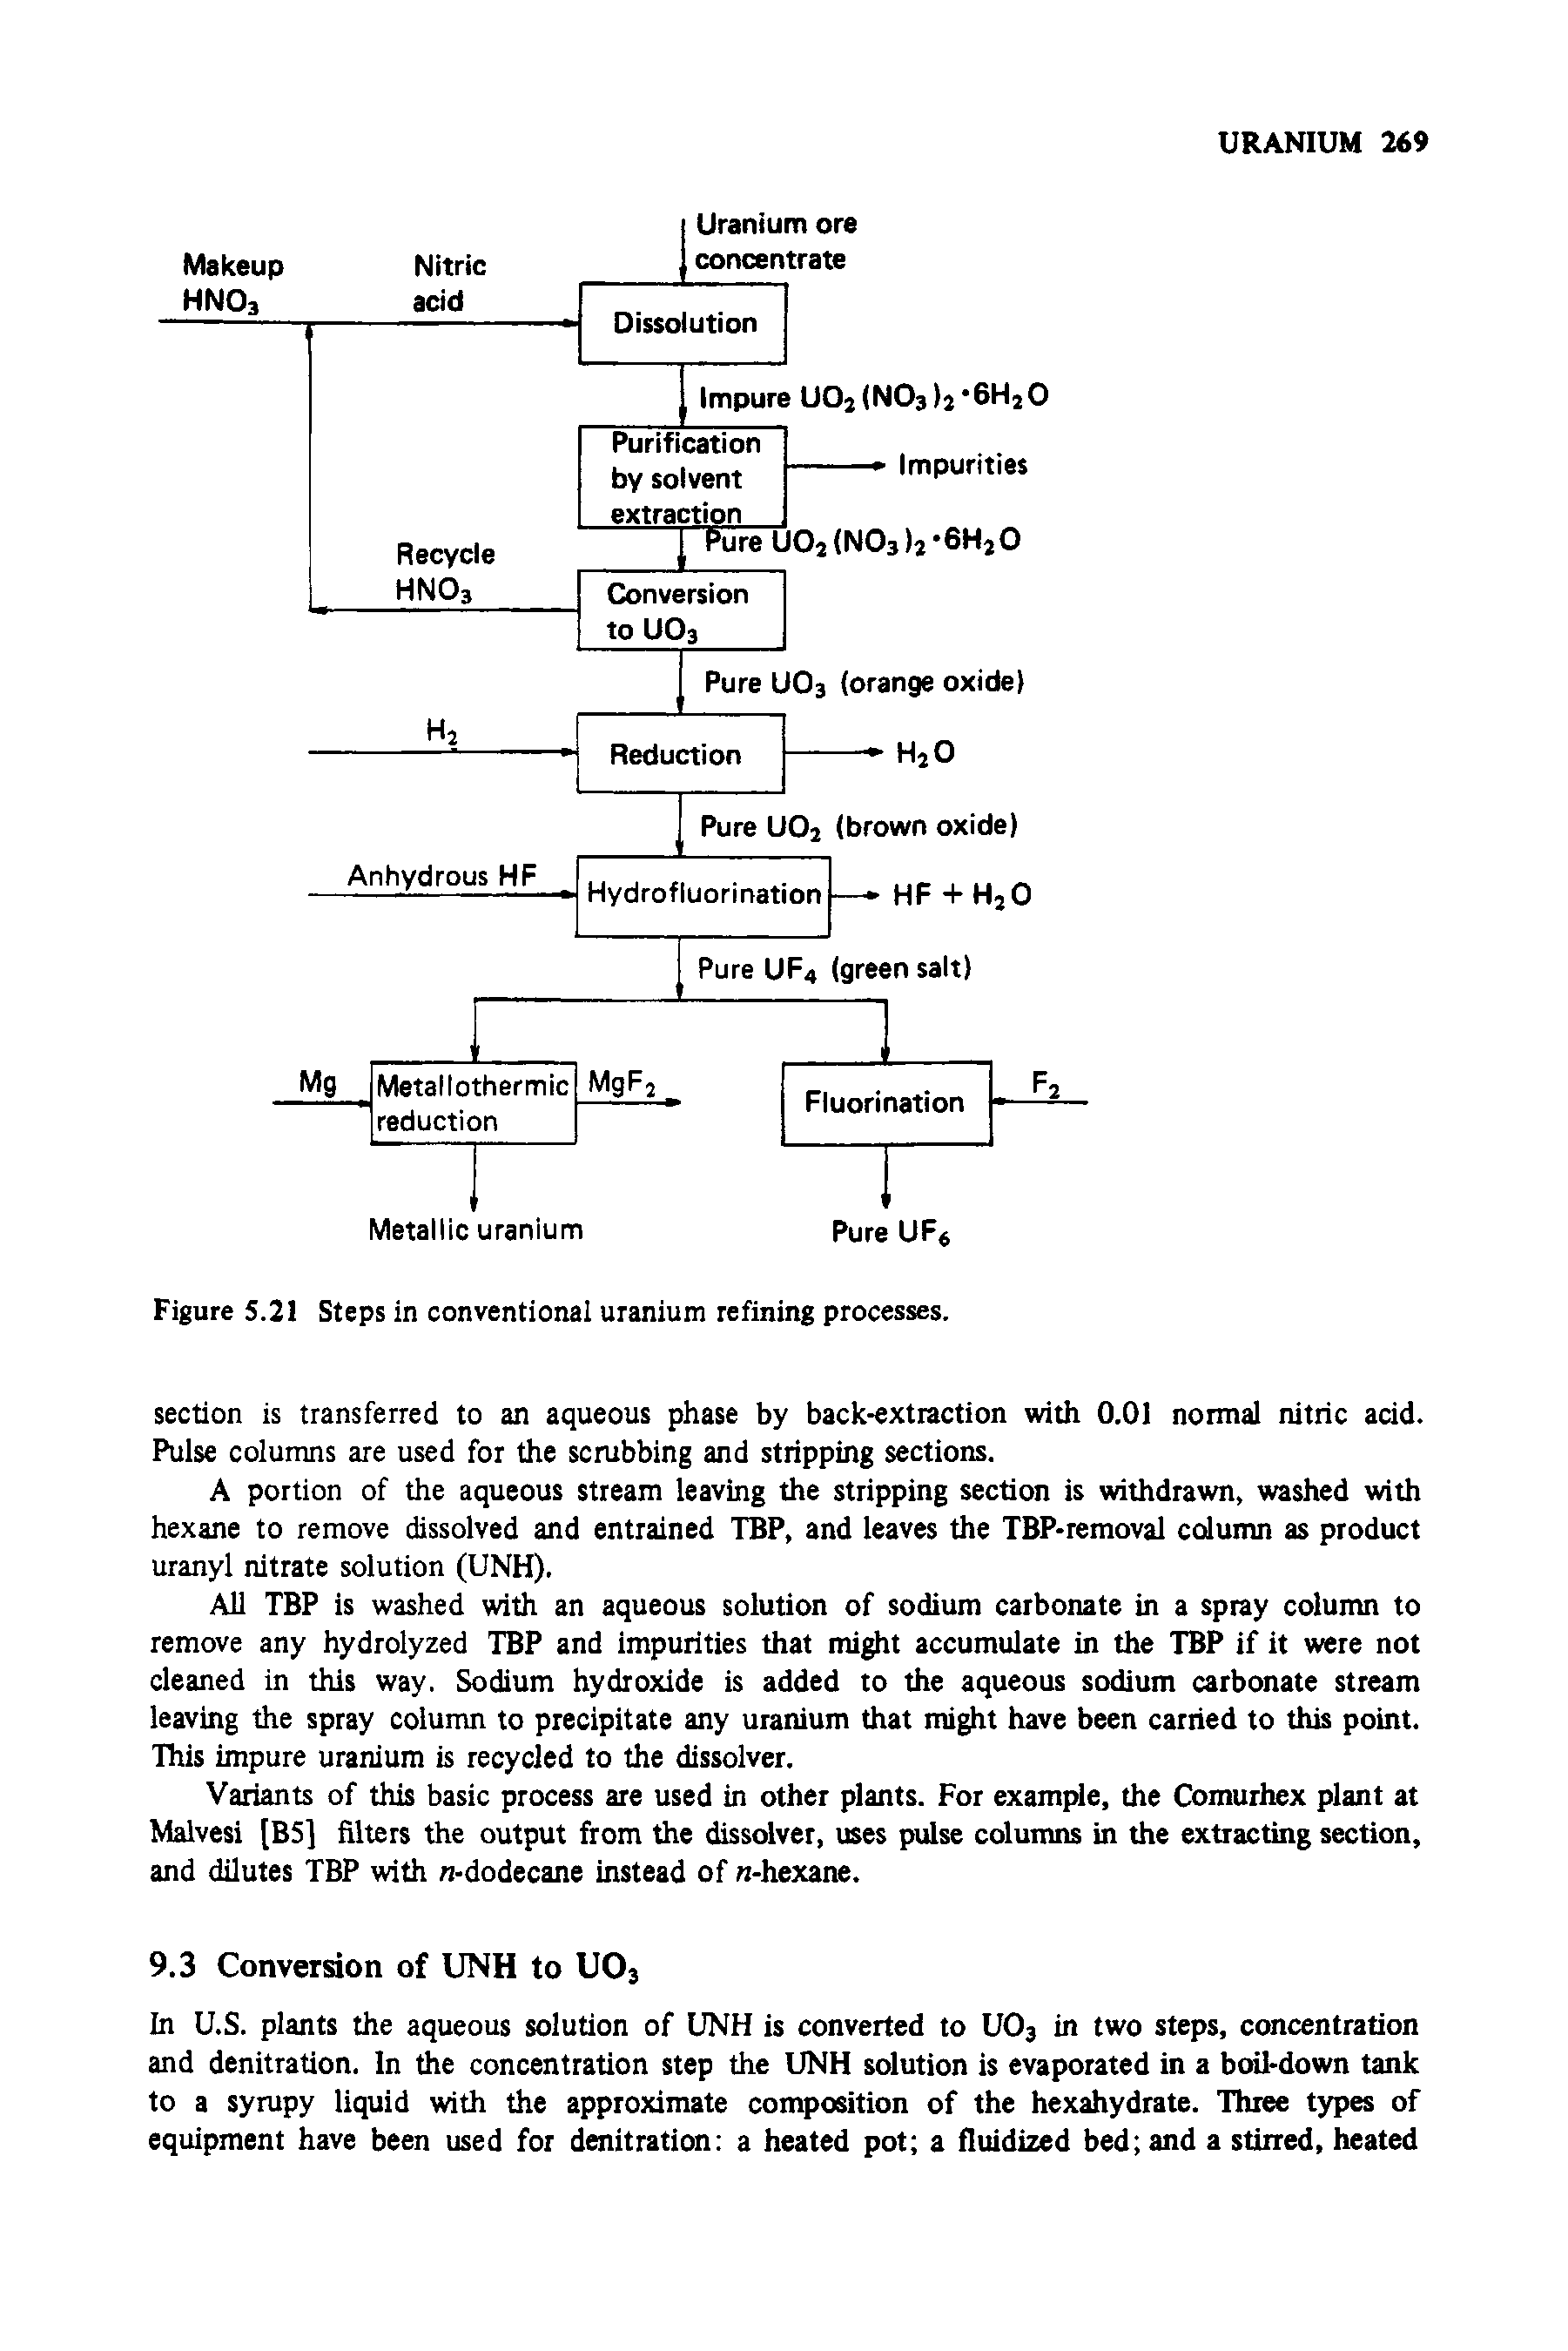 Figure 5.21 Steps in conventional uranium refining processes.